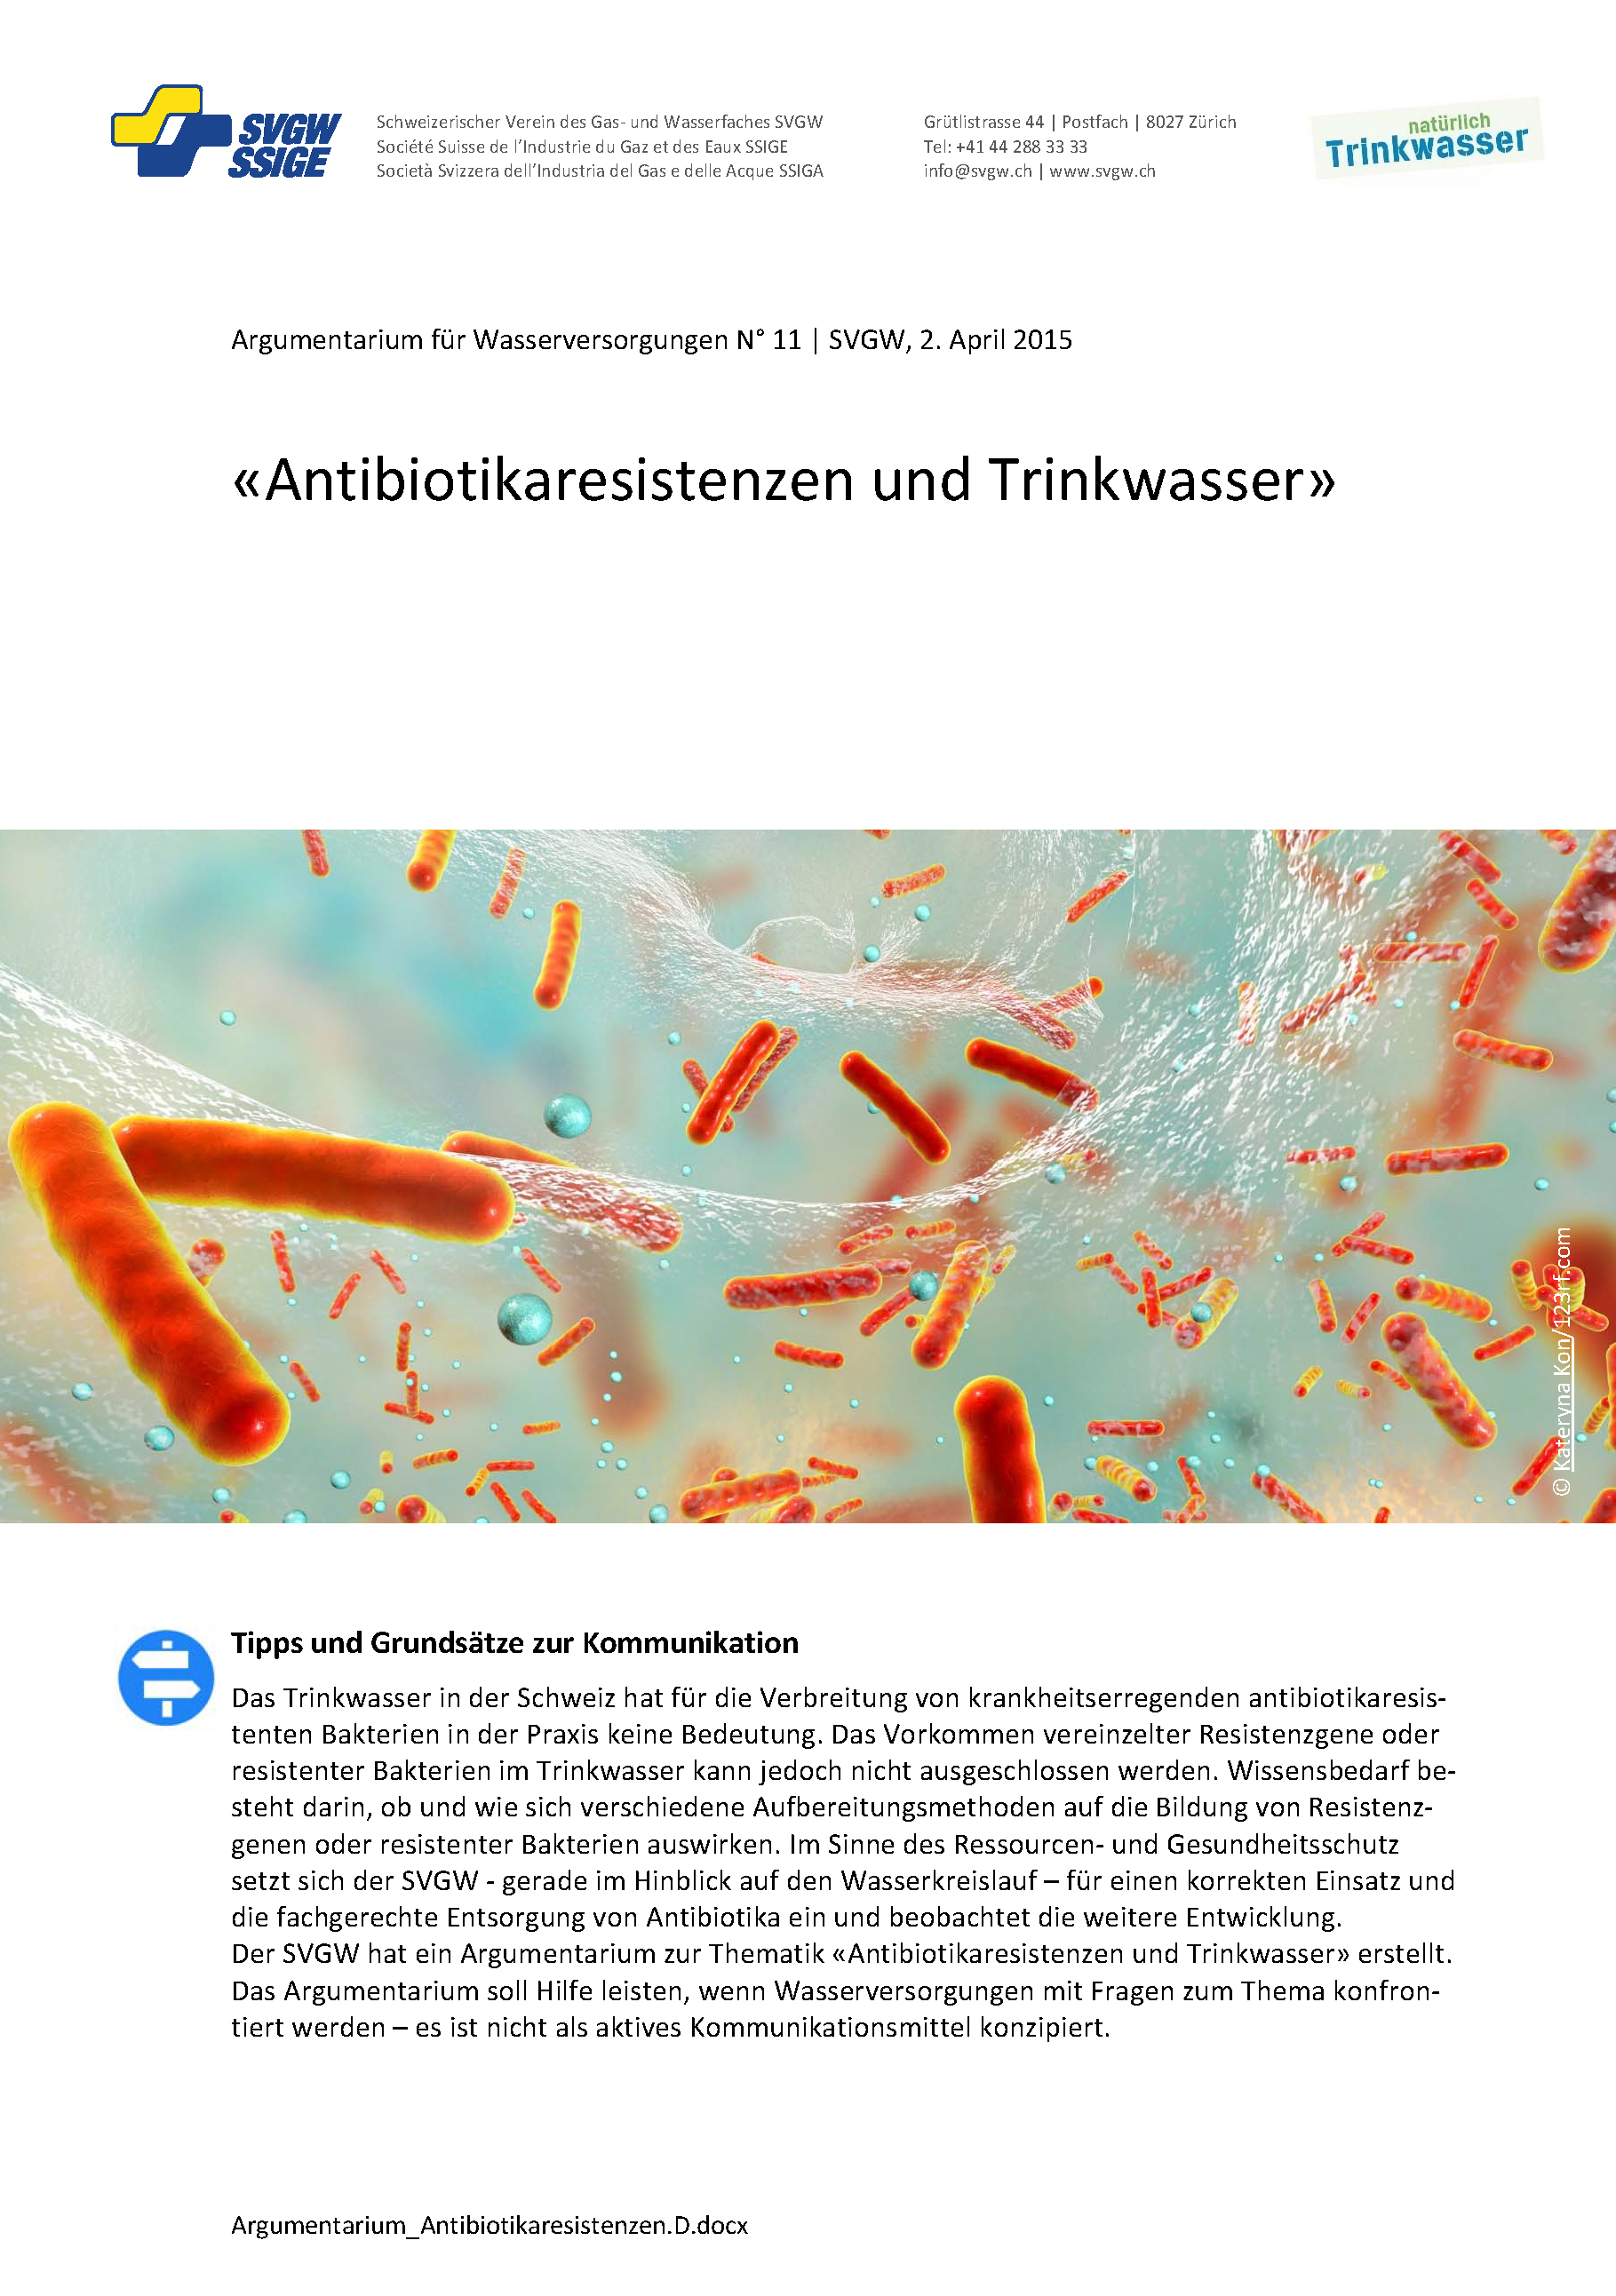 Argumentarium: «Antibiotikaresistenzen und Trinkwasser»